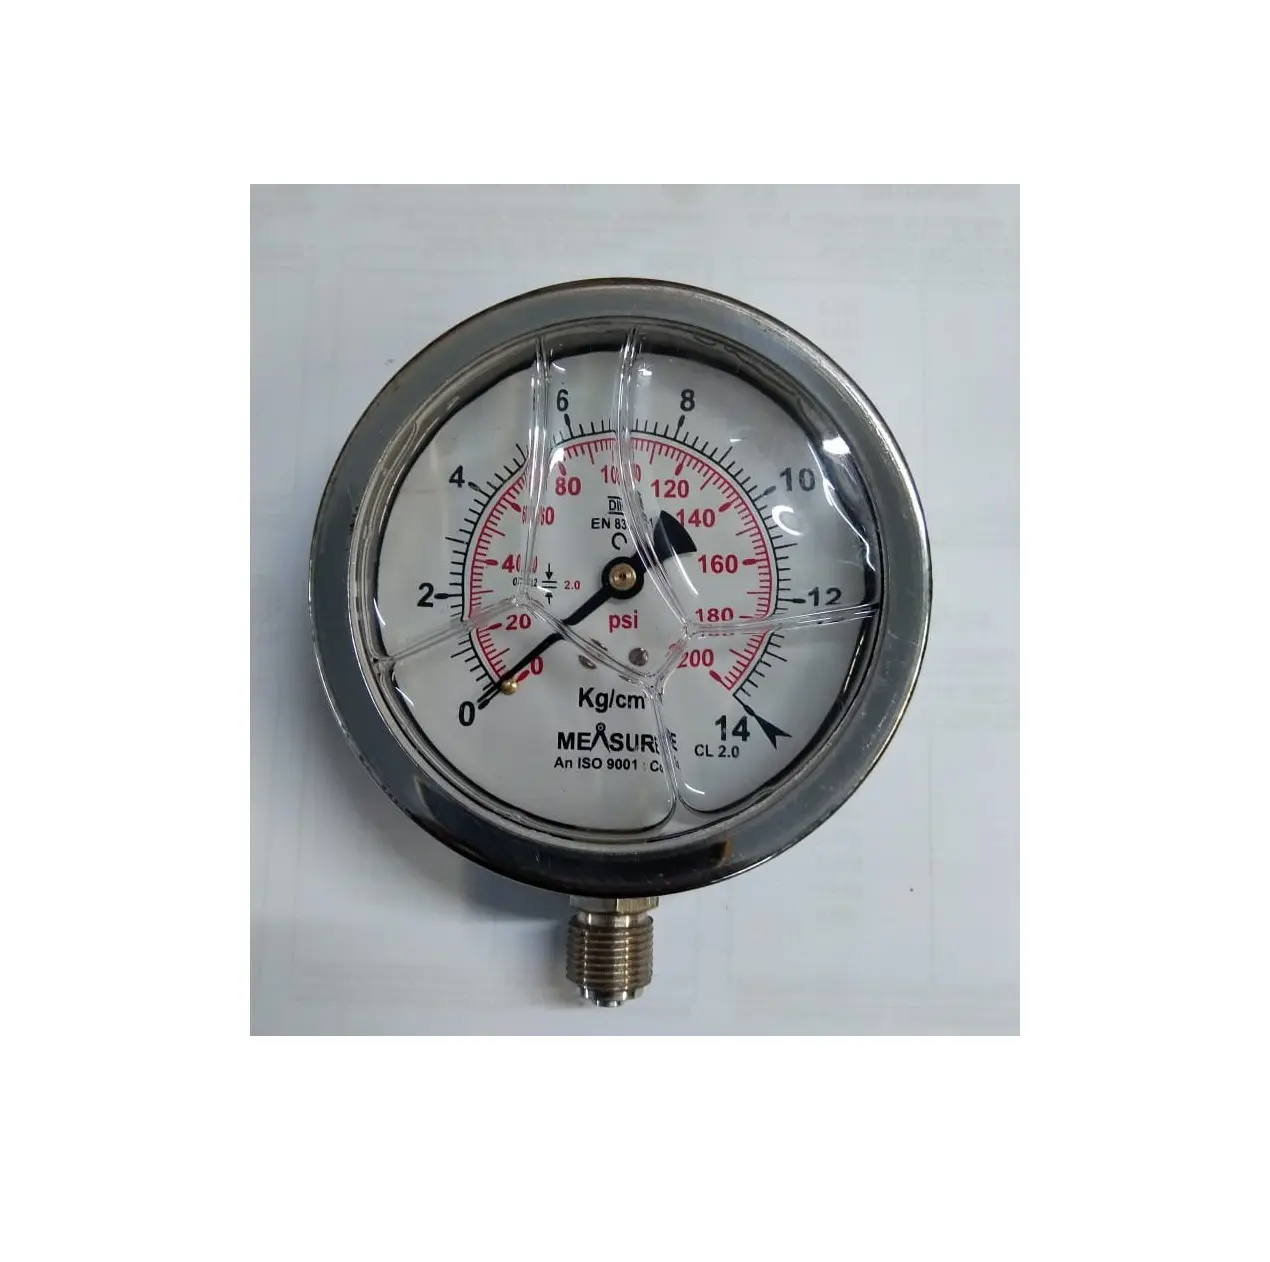 Indian Manufacturer Good Quality Liquid Filled Manometer Pressure Gauge EN837 Standard Available at Export